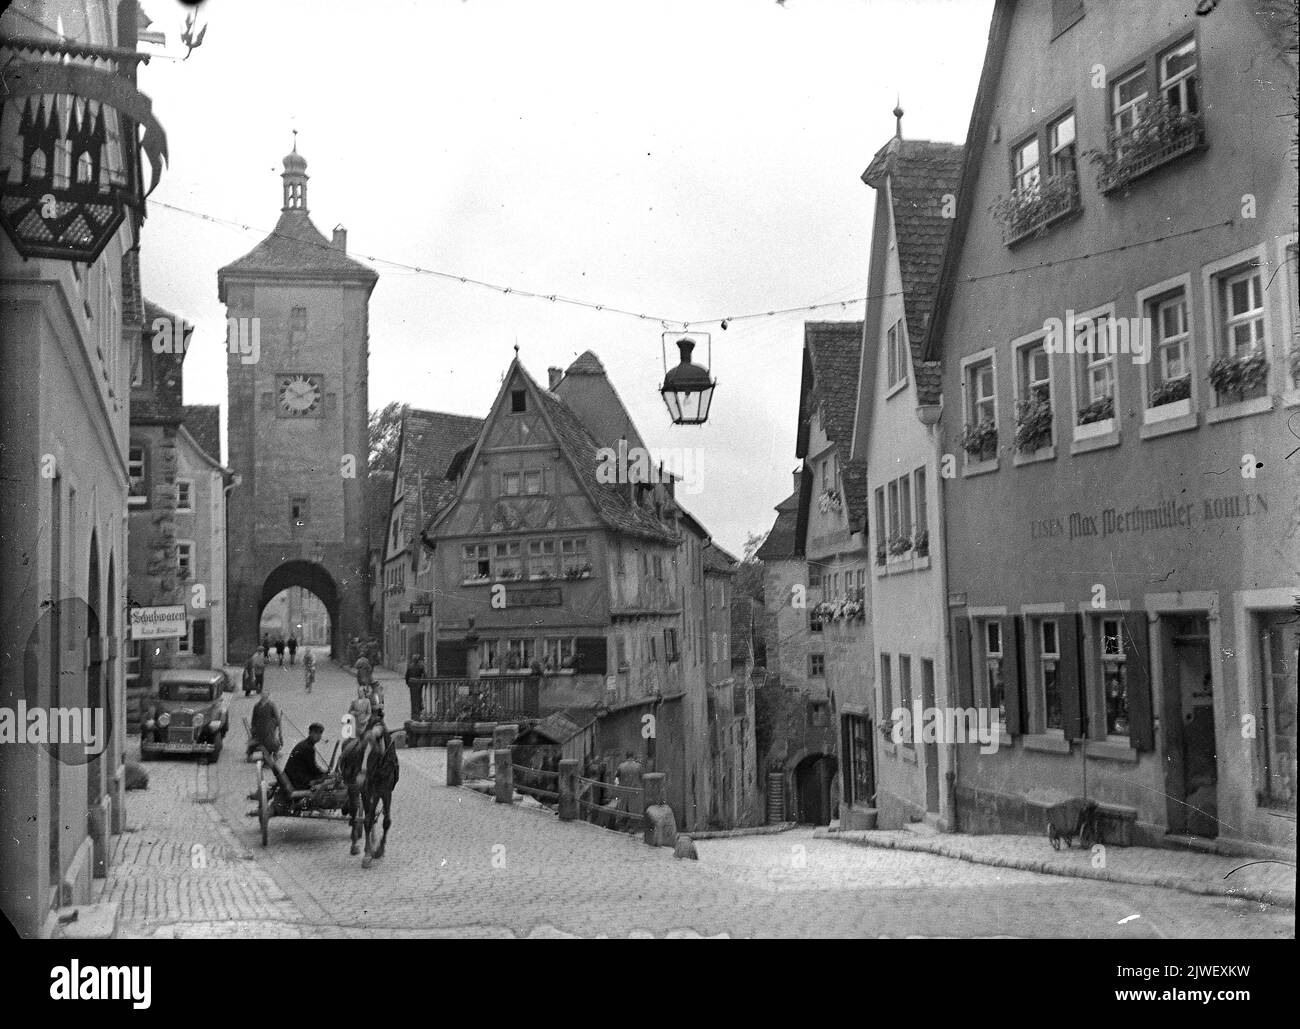 Medieval town of Rothenburg ob der Tauber, Germany 1933 Deutschland Stock Photo